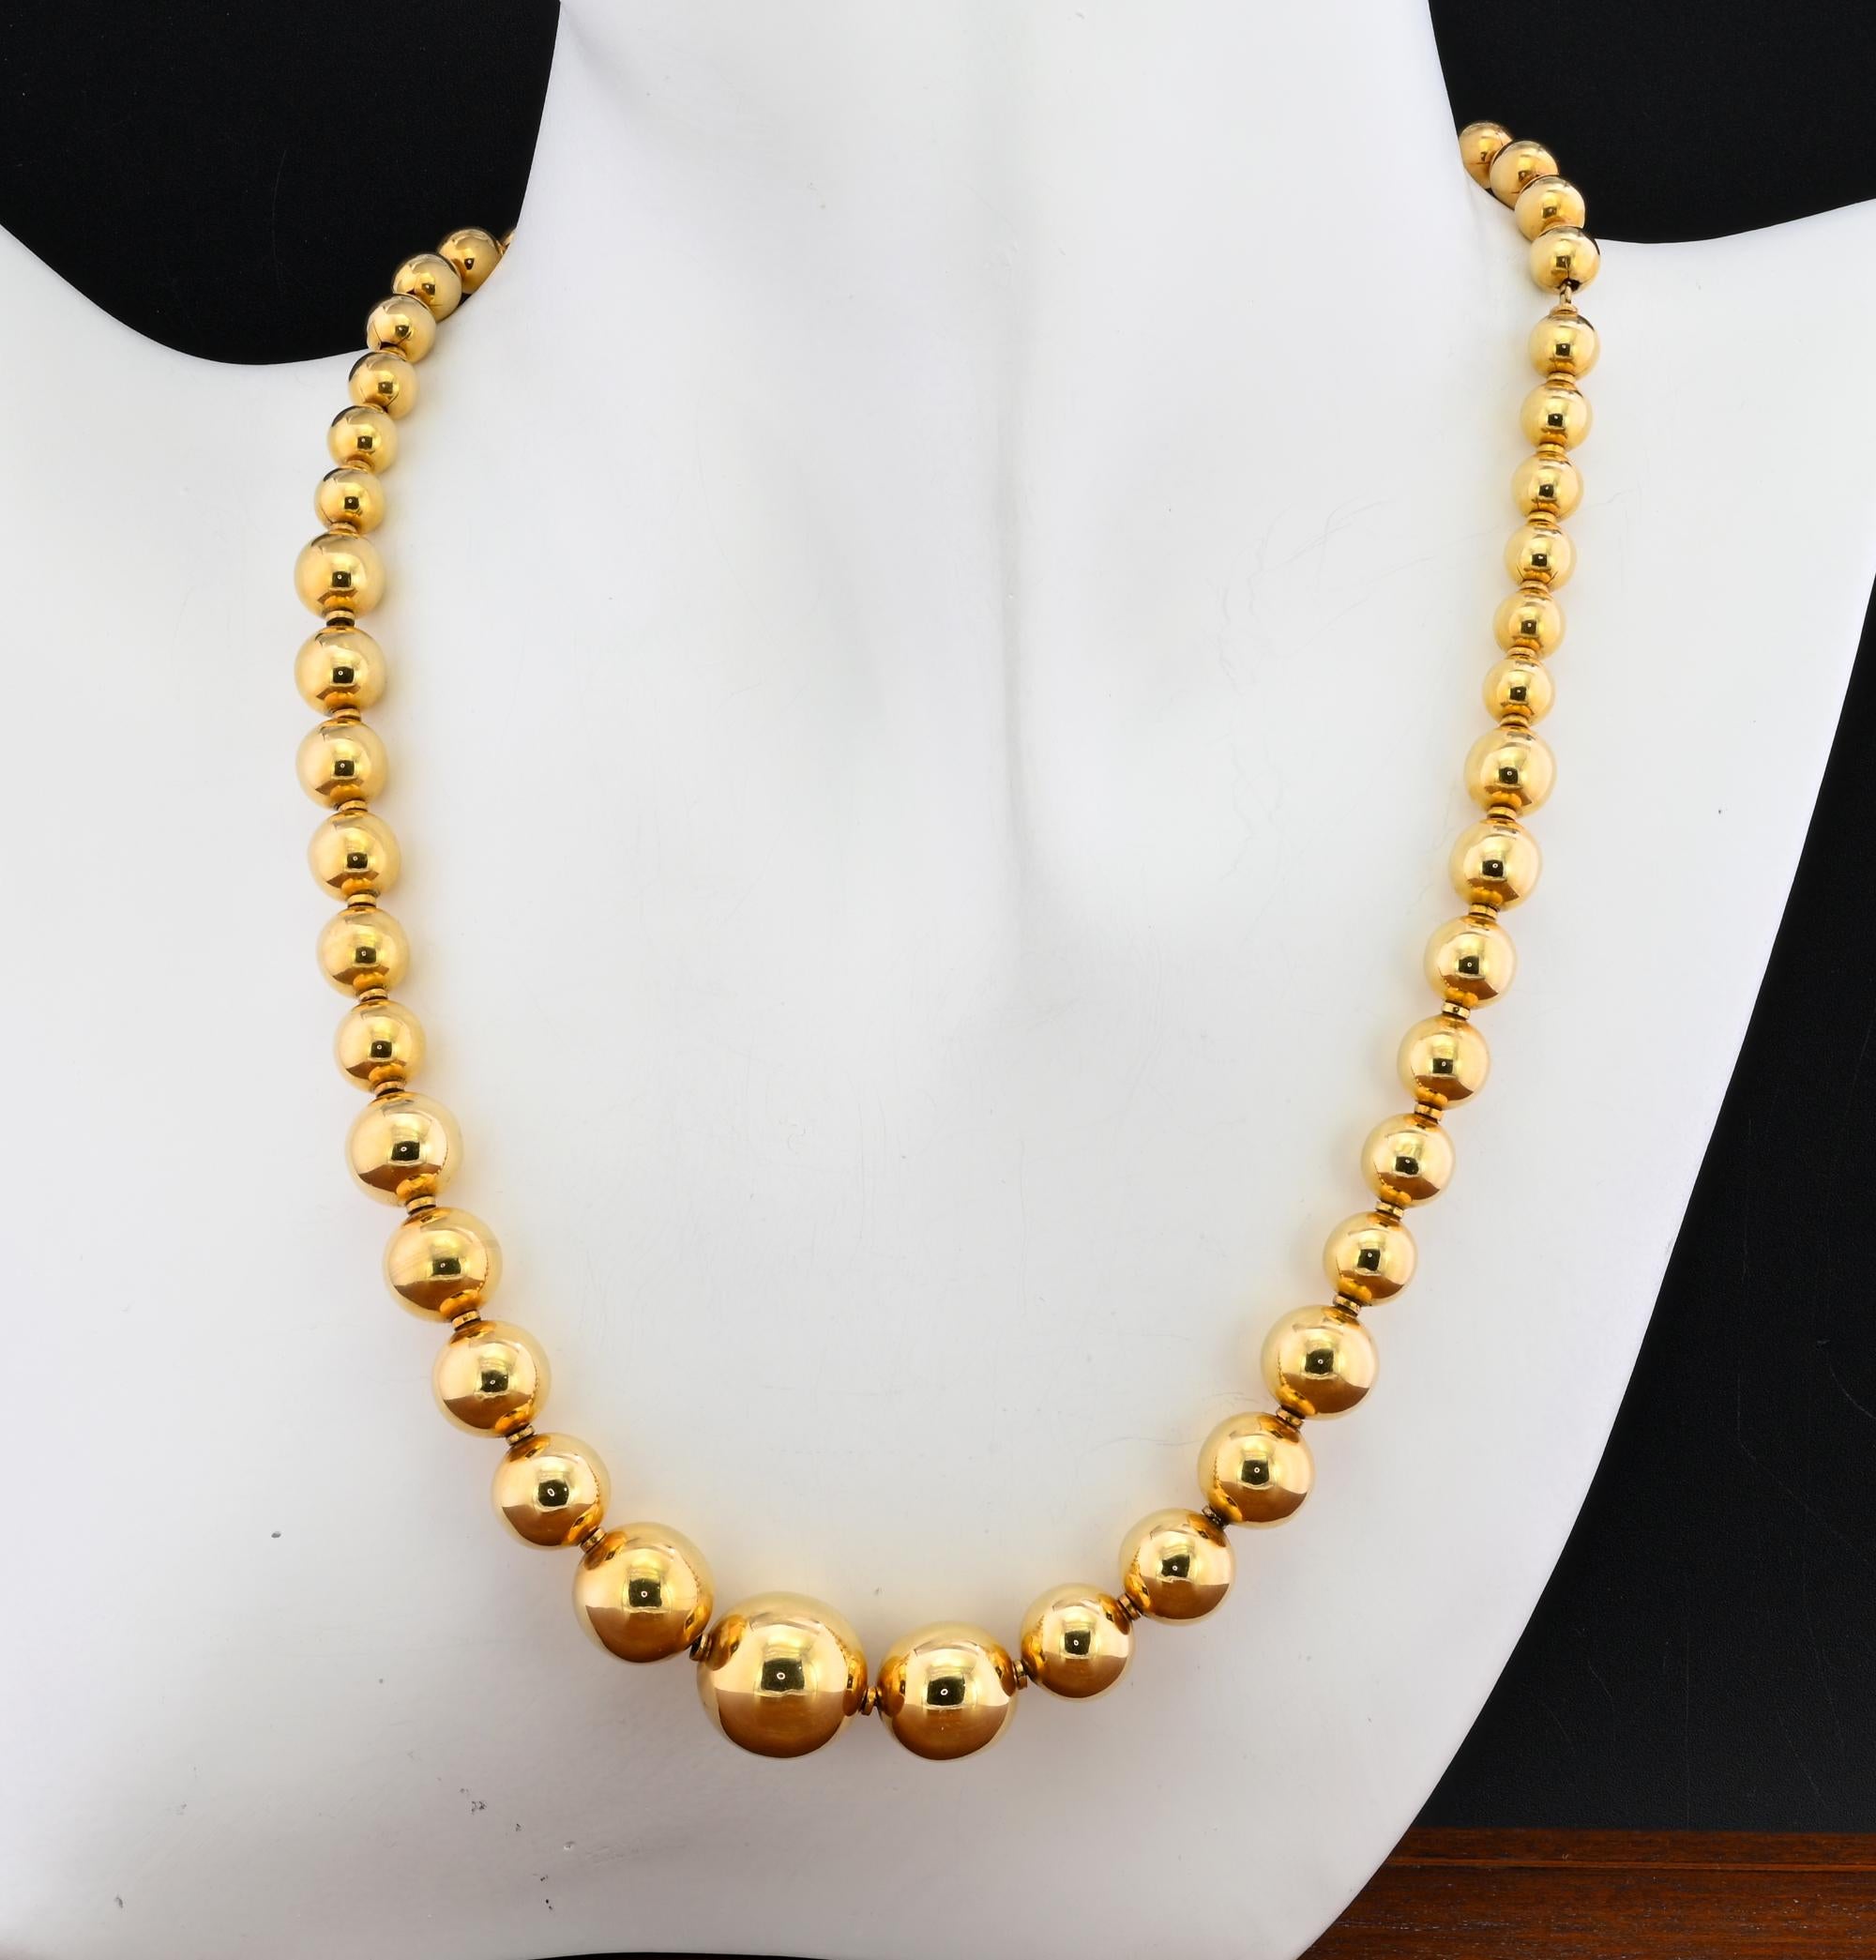 Vintage exquis collier vintage 1945 circa, origine italienne
Magnifiquement réalisée à la main en or massif 18 carats, elle pèse 45 grammes.
Composé de perles en or allant de 14 mm pour la plus grande à 6,5 mm pour la plus petite, avec intégration